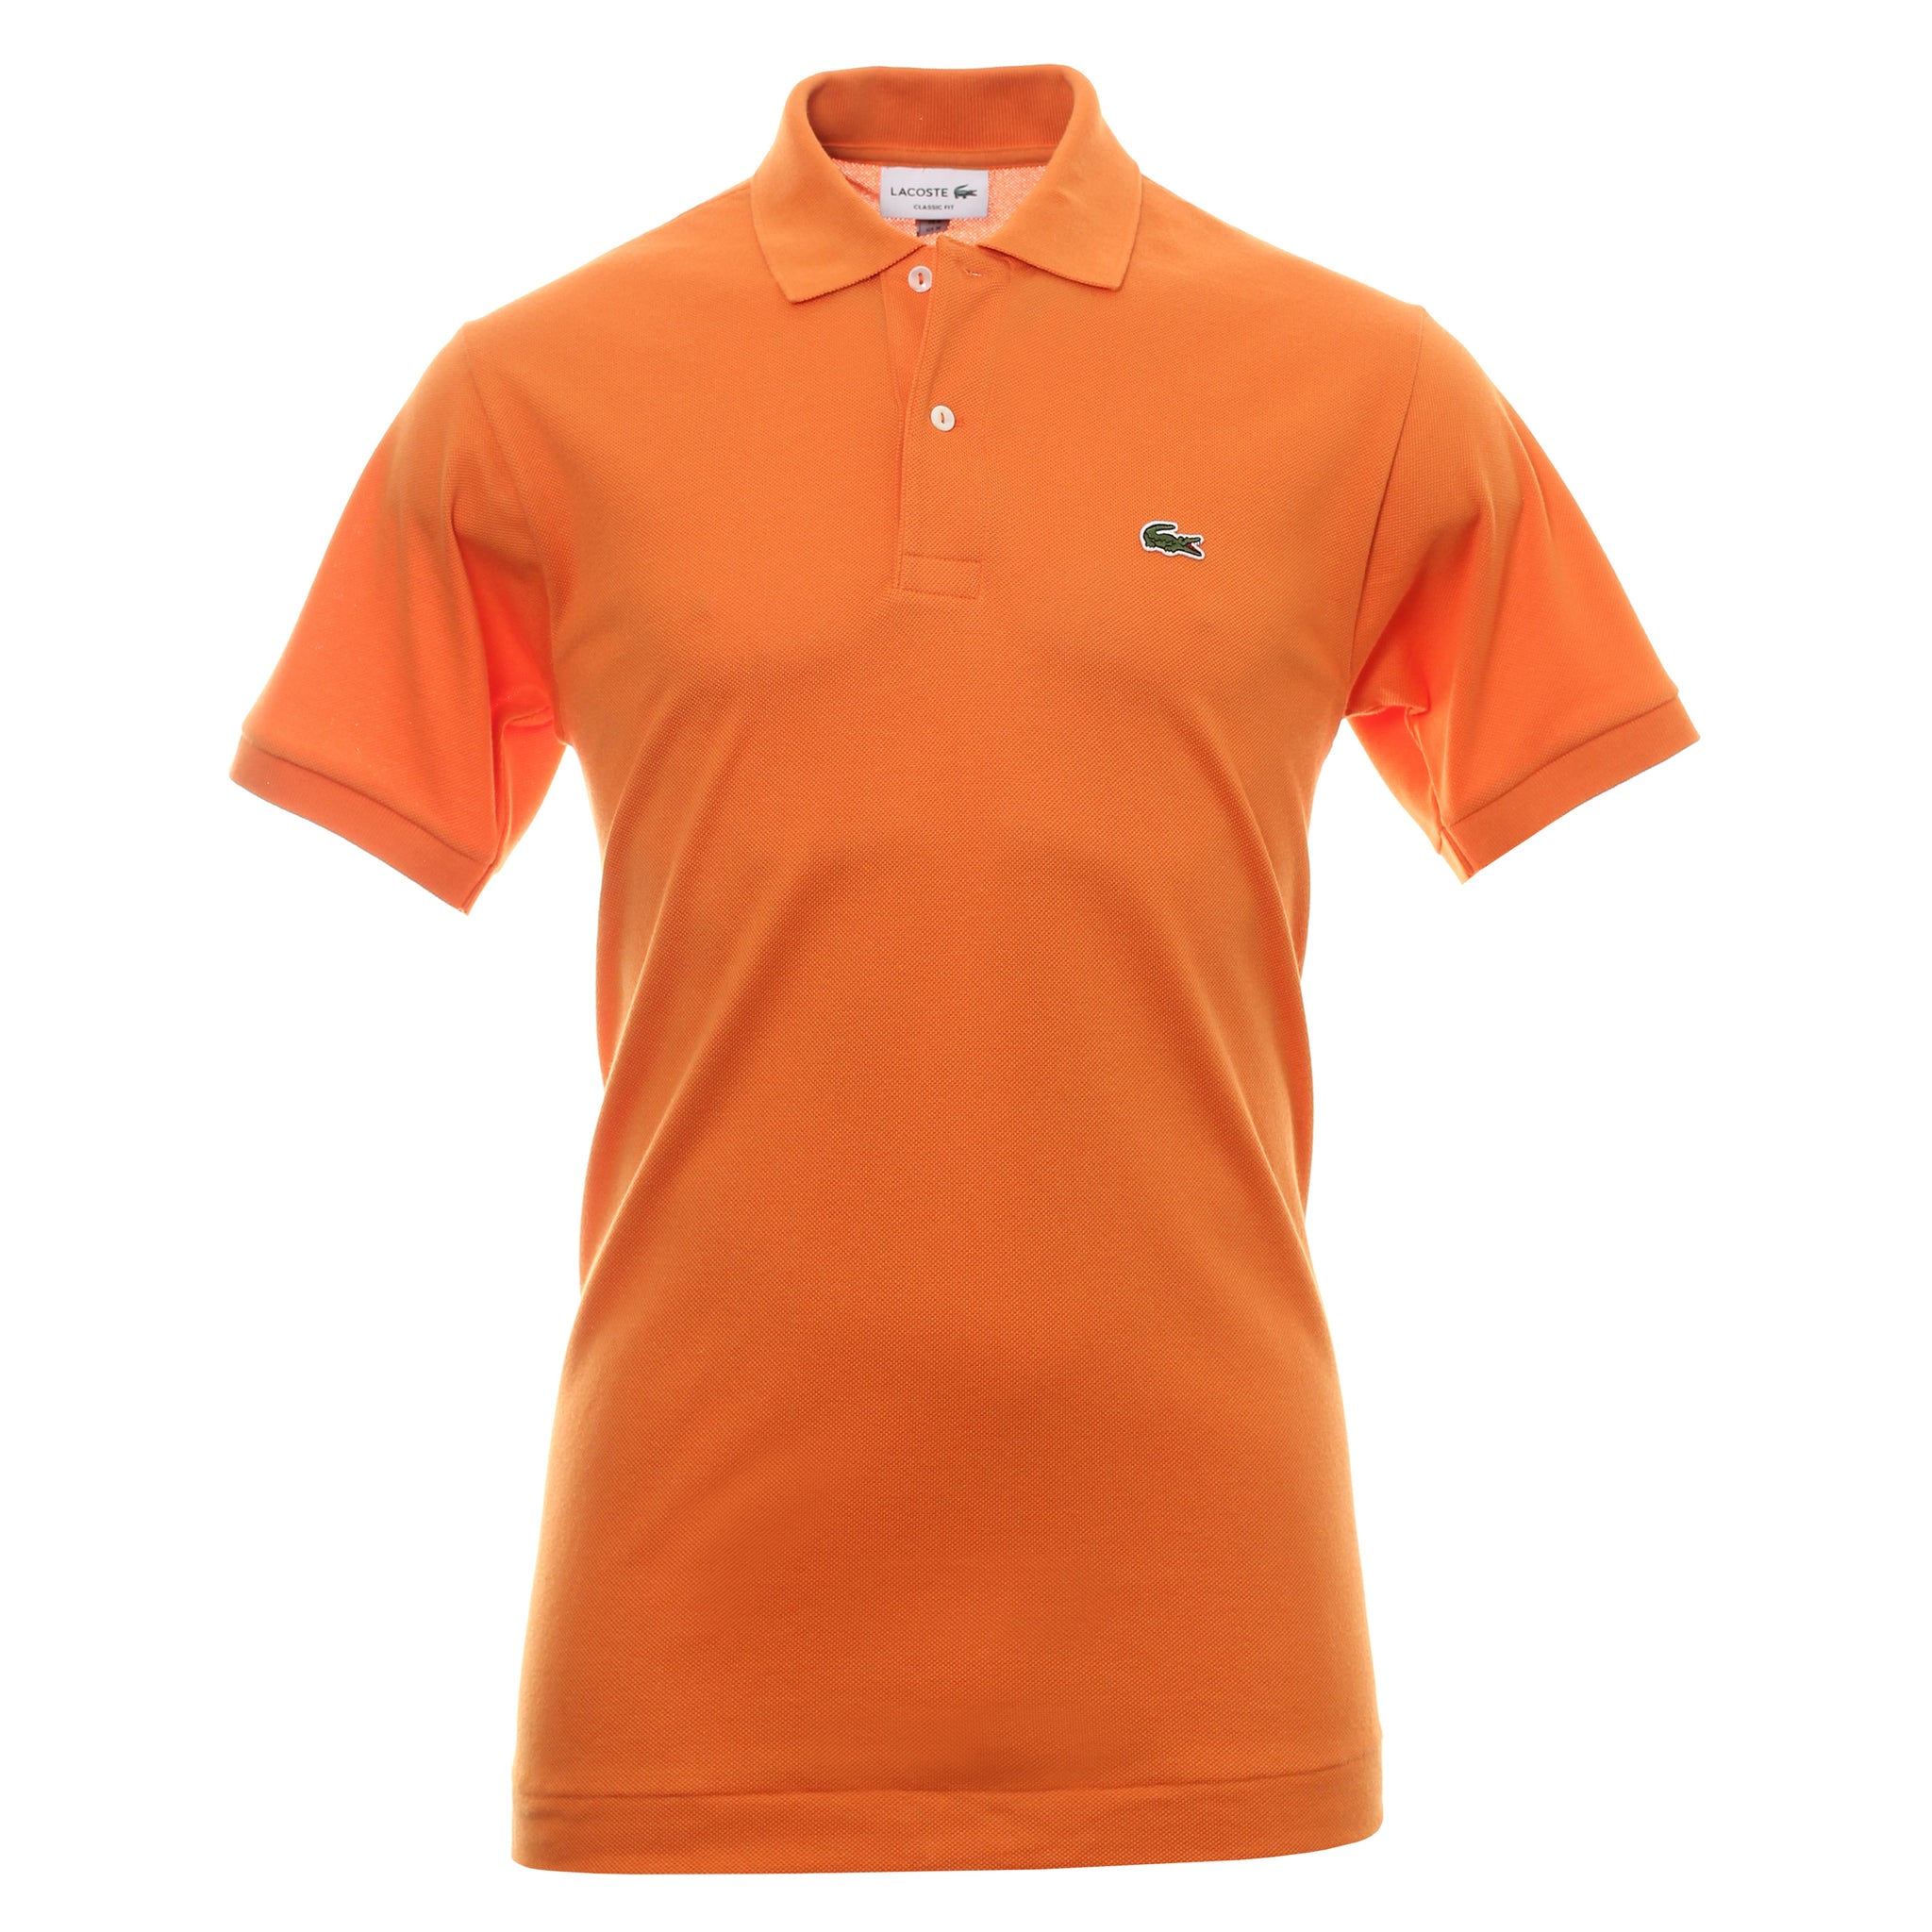 orange lacoste shirt